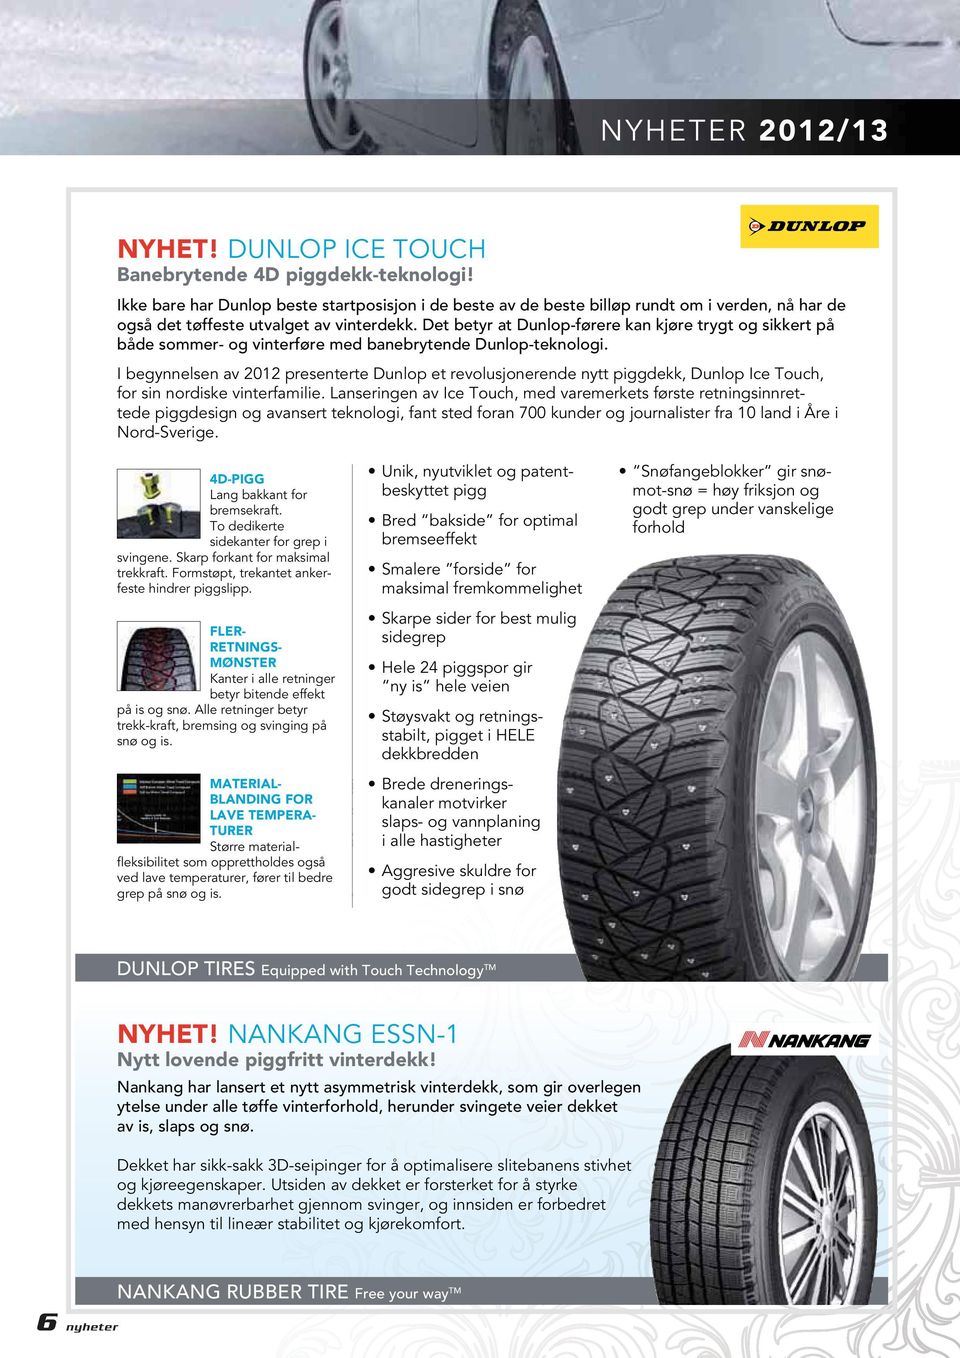 Det betyr at Dunlop-førere kan kjøre trygt og sikkert på både sommer- og vinterføre med banebrytende Dunlop-teknologi.